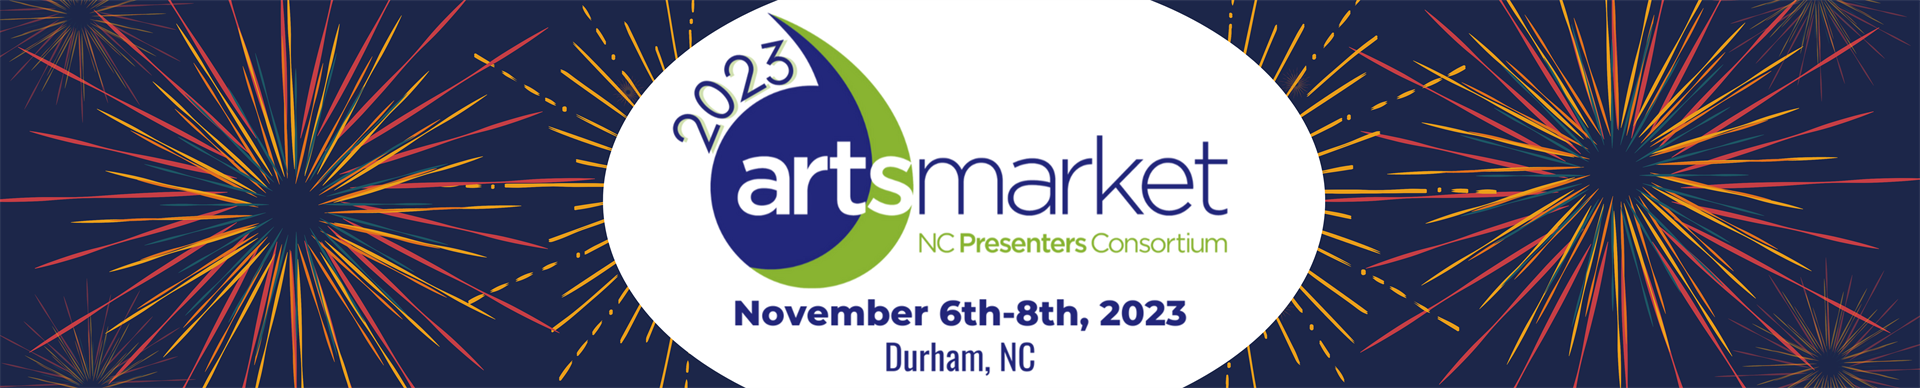 banner image with ArtsMarket 2023 logo